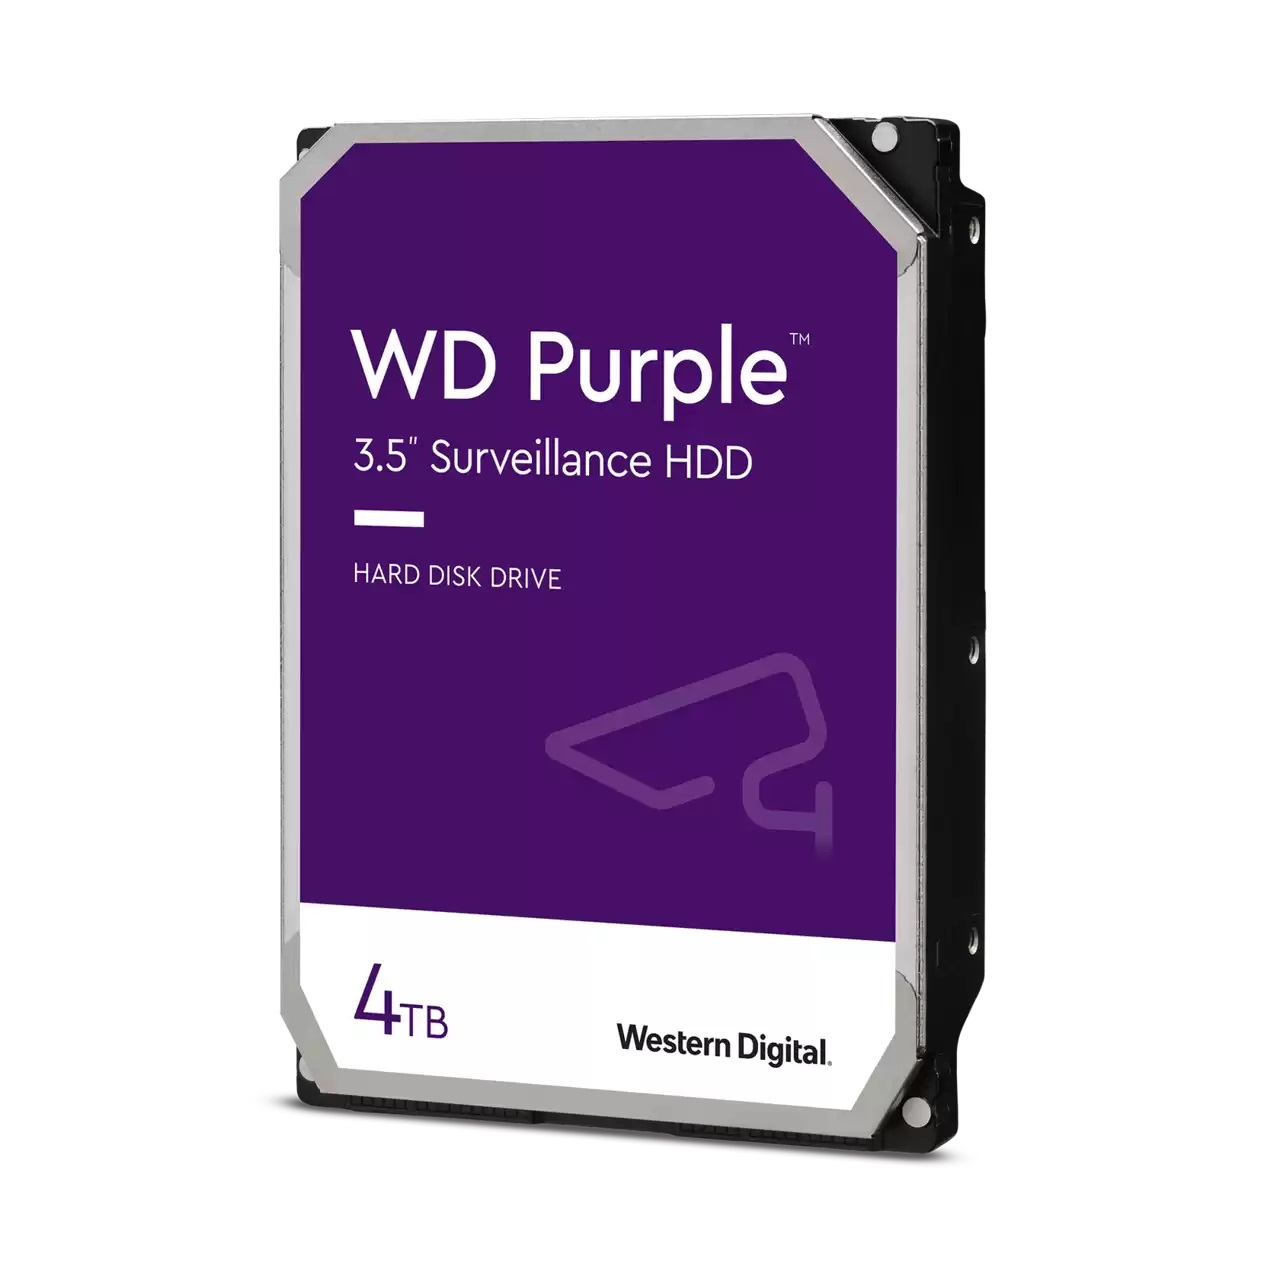 WD Purple 4TB SATA600, 3,5", Surveilance, 256MB, WD42PURZ